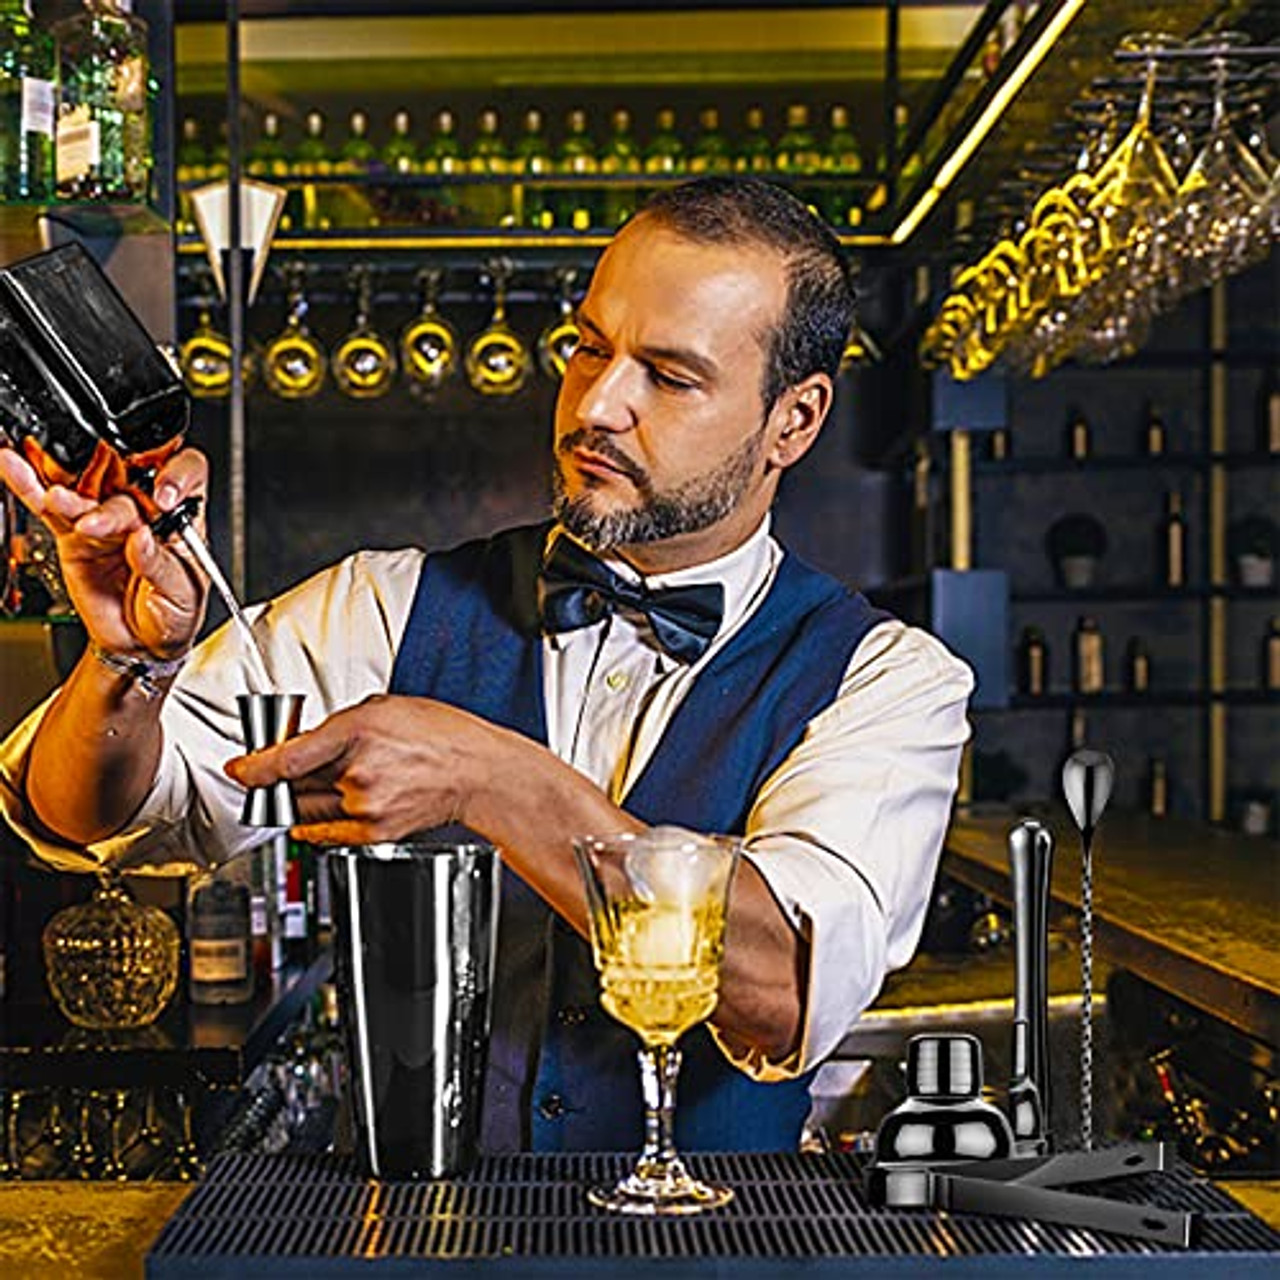 Mixology & Craft Bar Jigger Set for Bartenders